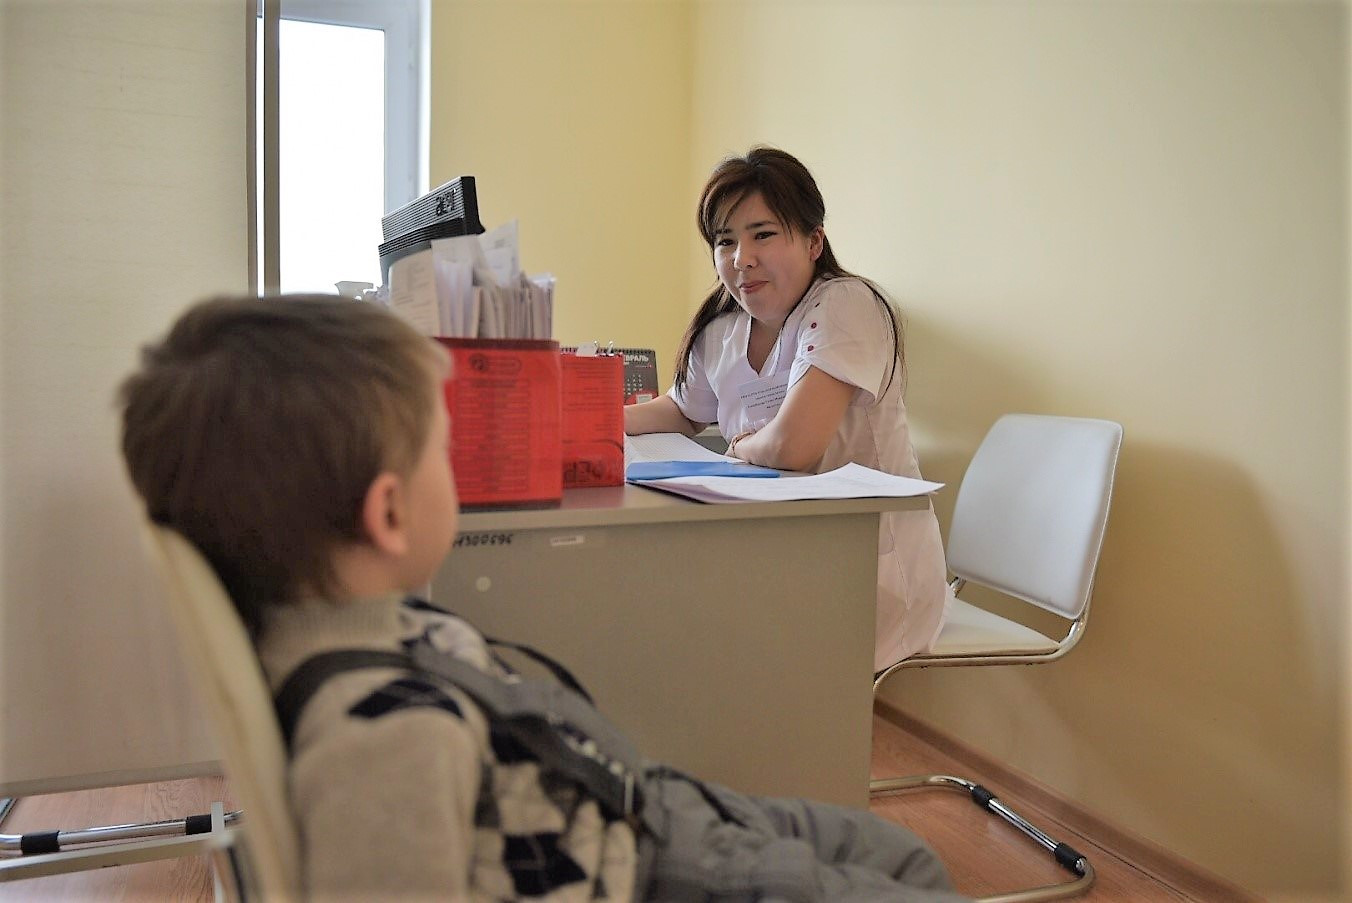 В Астане планируют открыть более 50 врачебных амбулаторий по проекту "Доктор у дома"   